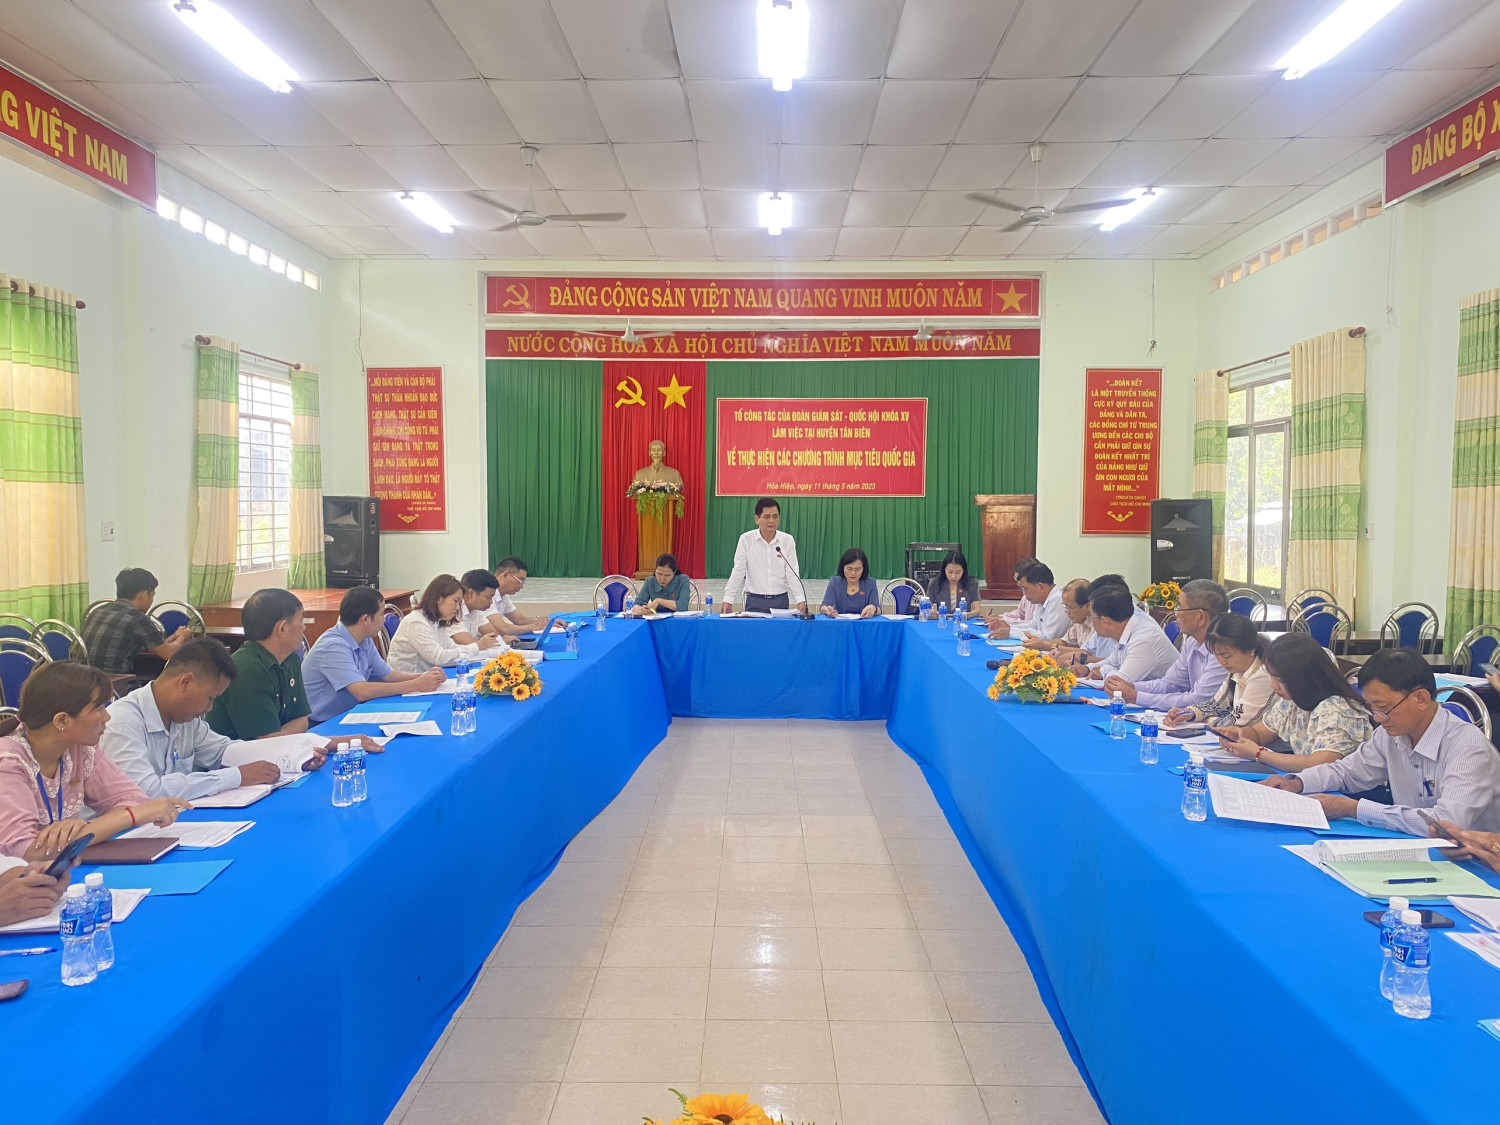 Đoàn Giám sát – Quốc hội khóa XV làm việc tại huyện Tân Biên về thực hiện các chương trình mục tiêu Quốc gia.